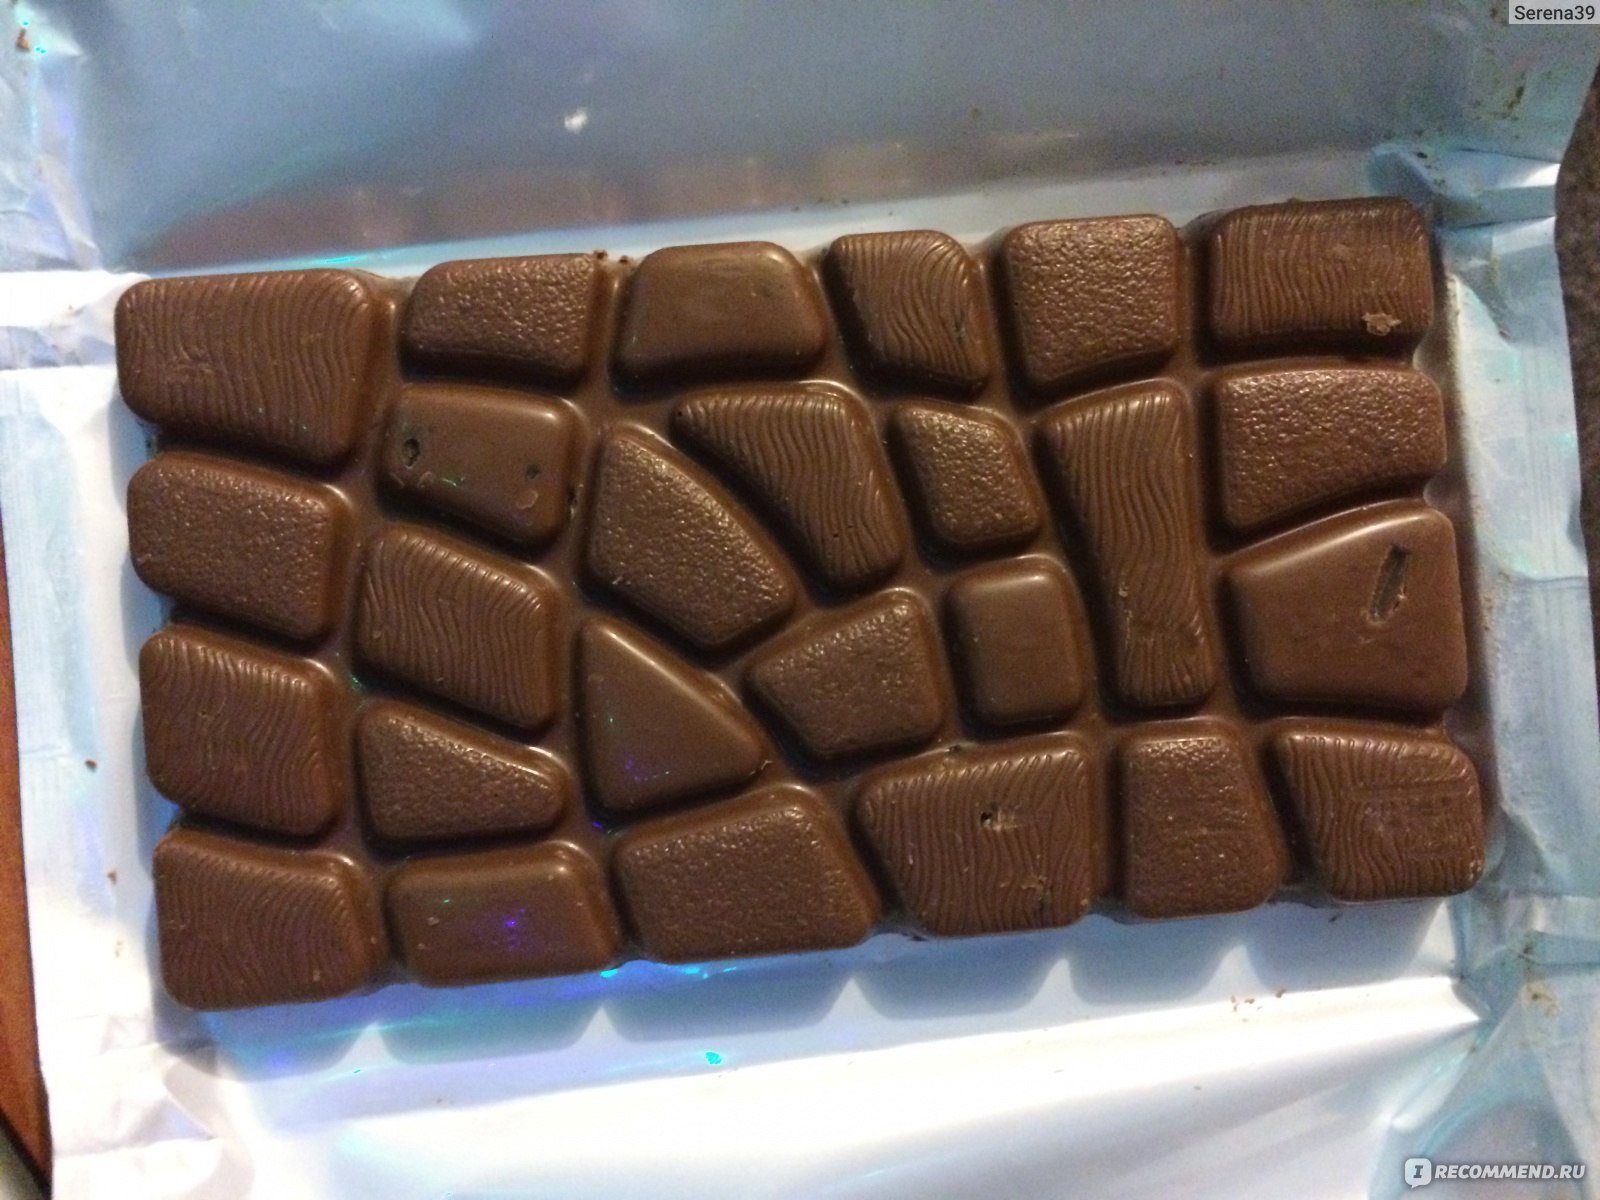 Шоколад внутри